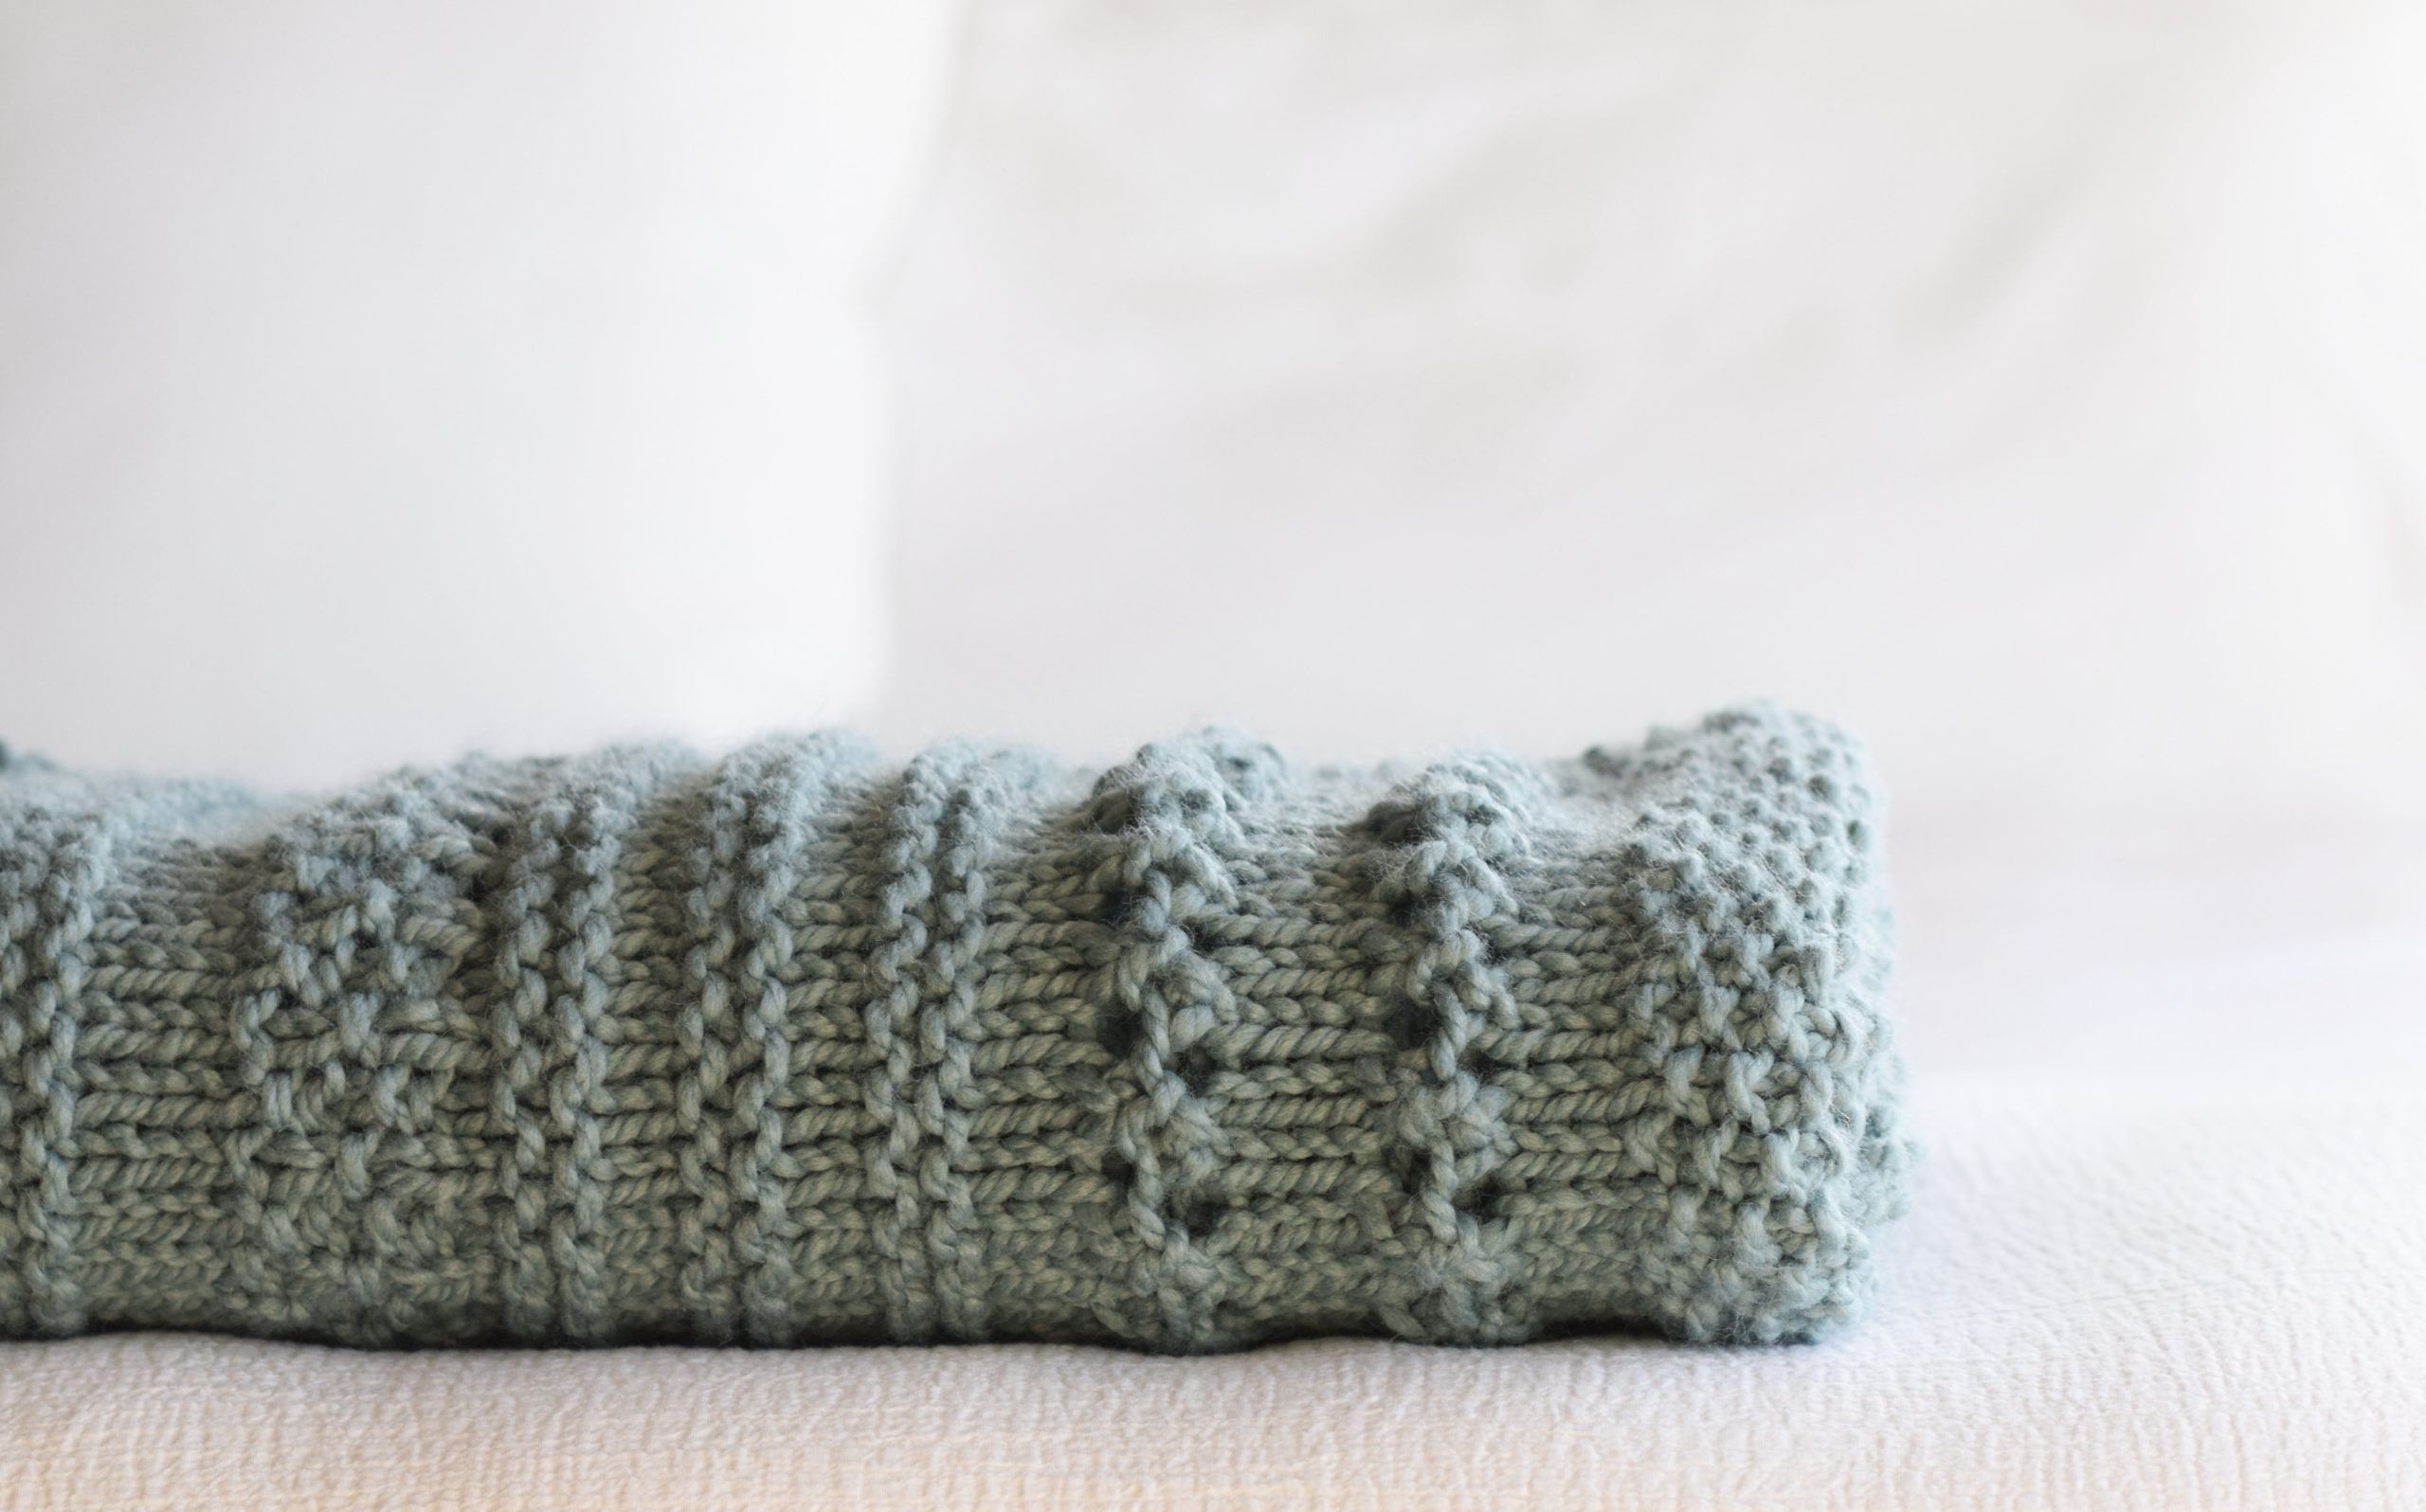 Pom pom blanket knitting pattern free